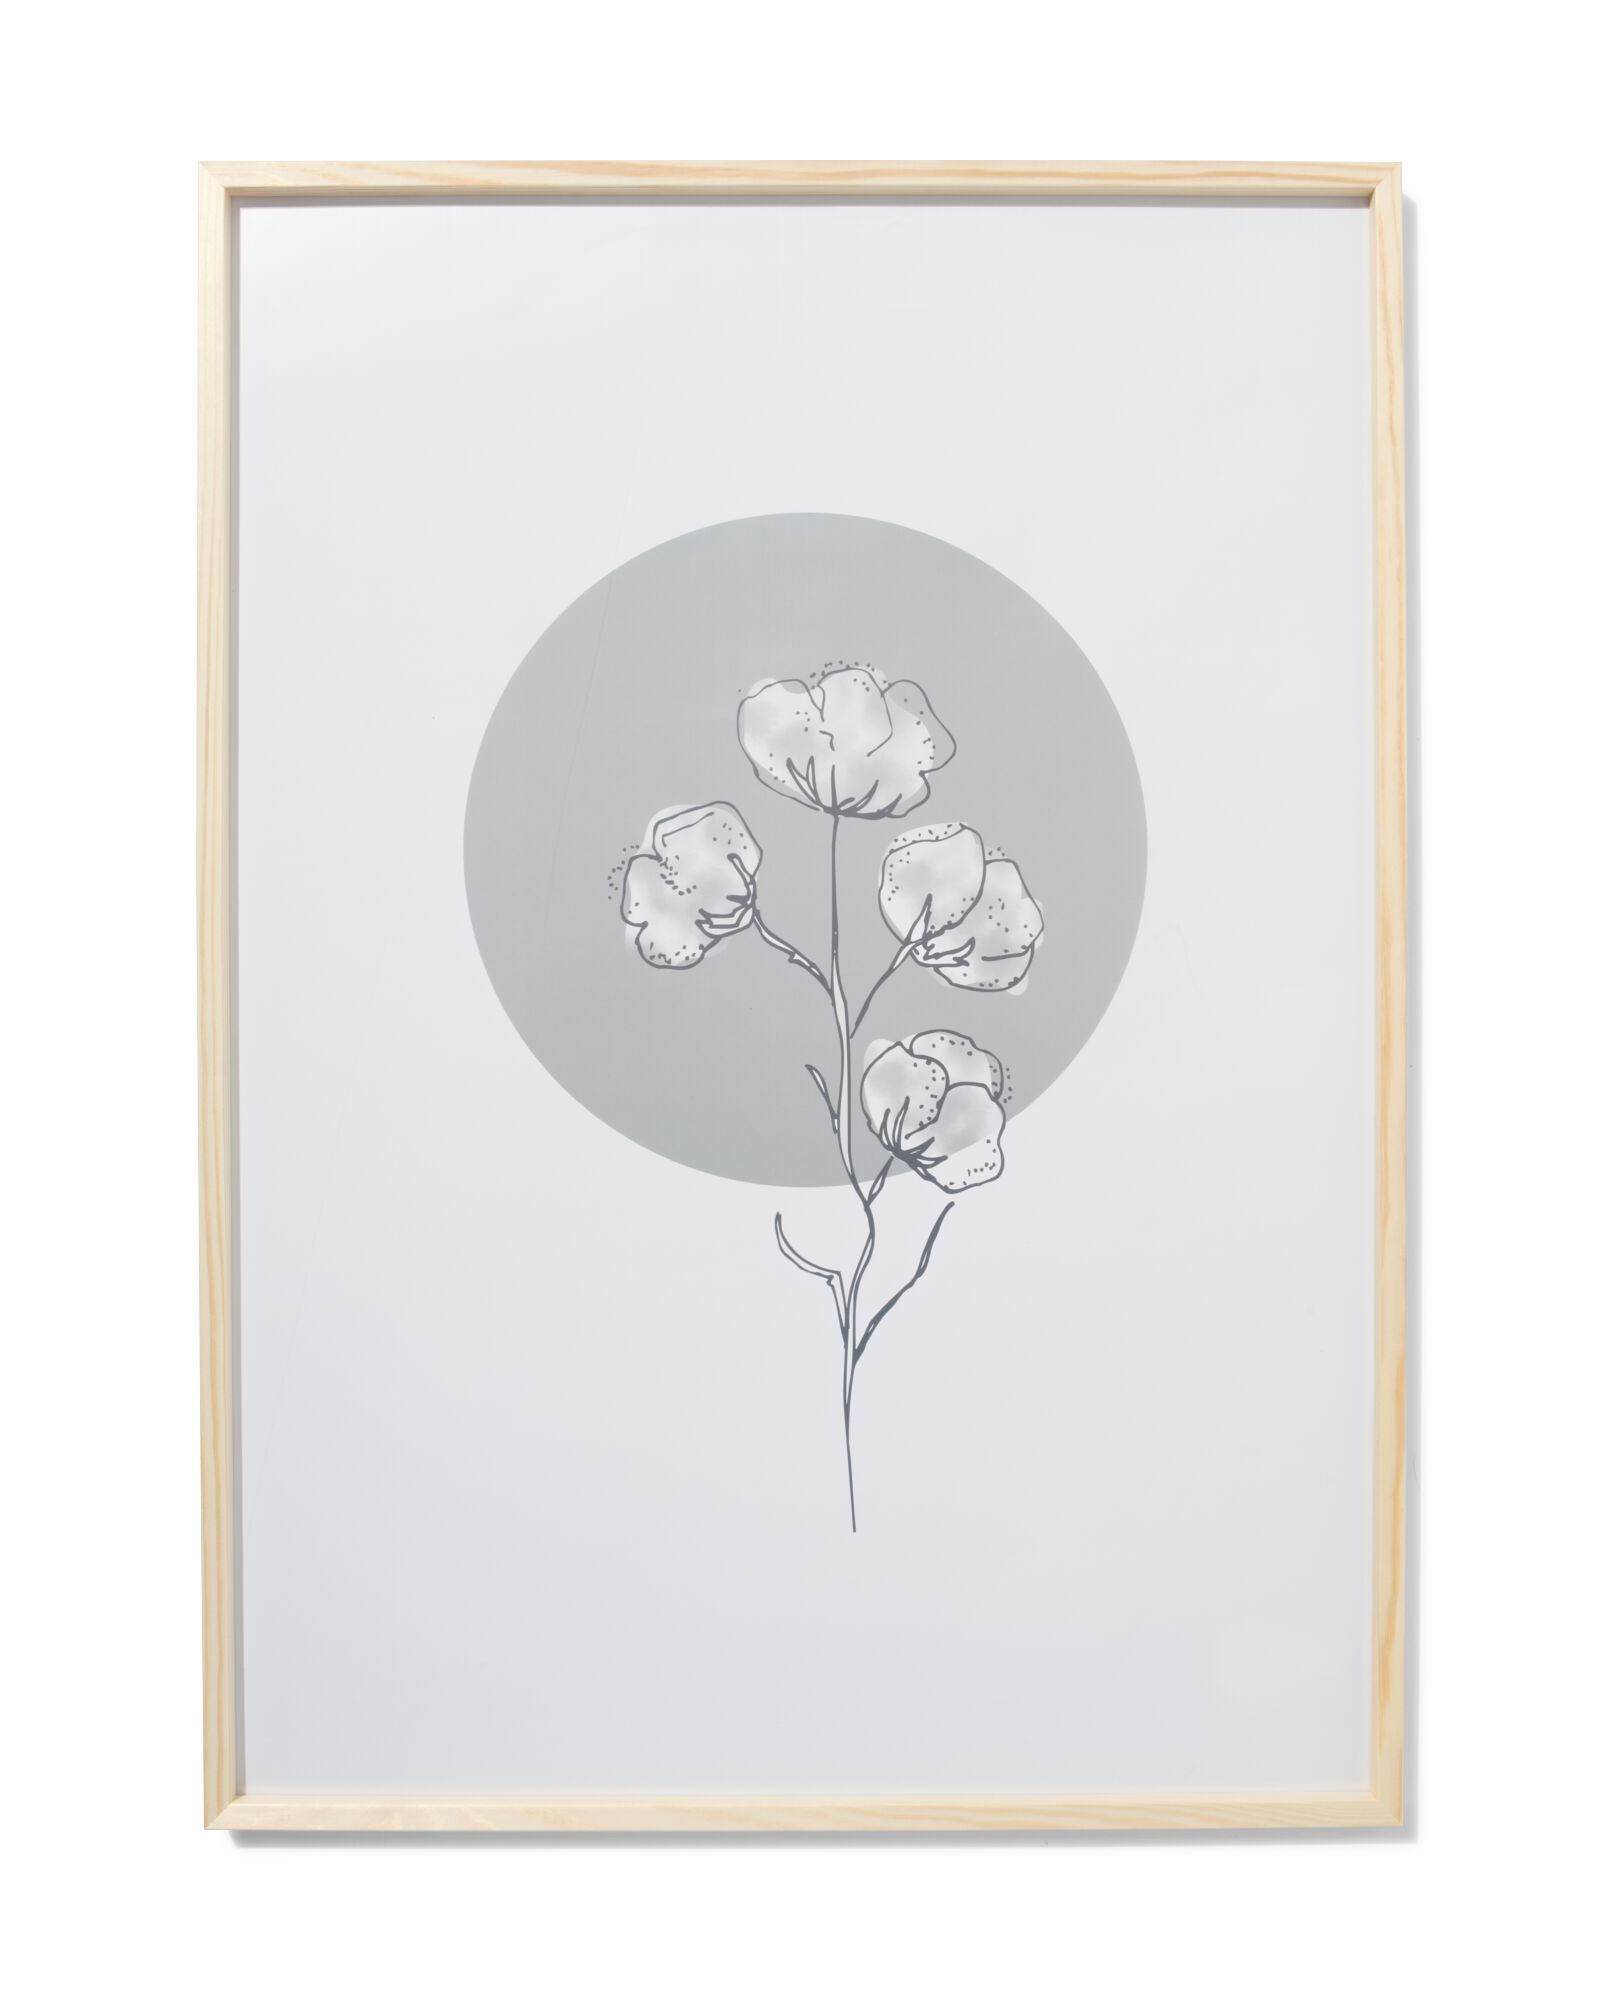 HOMIK Cadre photo blanc 70 x 50 cm avec design classique élégant